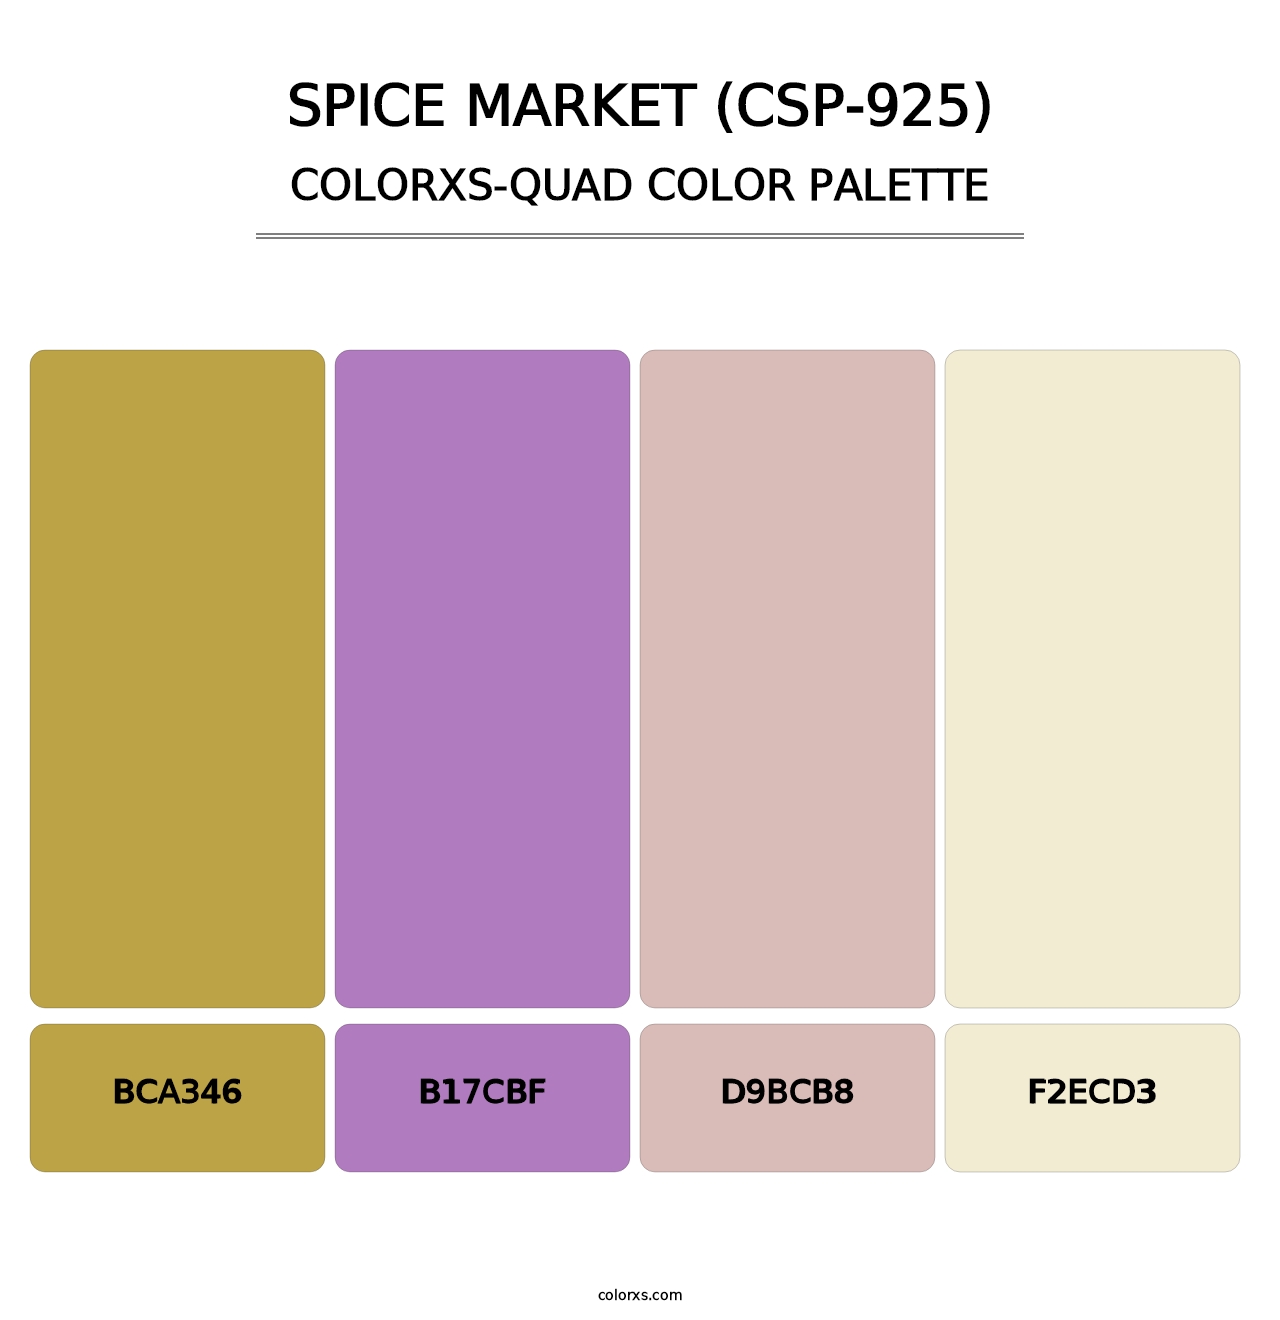 Spice Market (CSP-925) - Colorxs Quad Palette